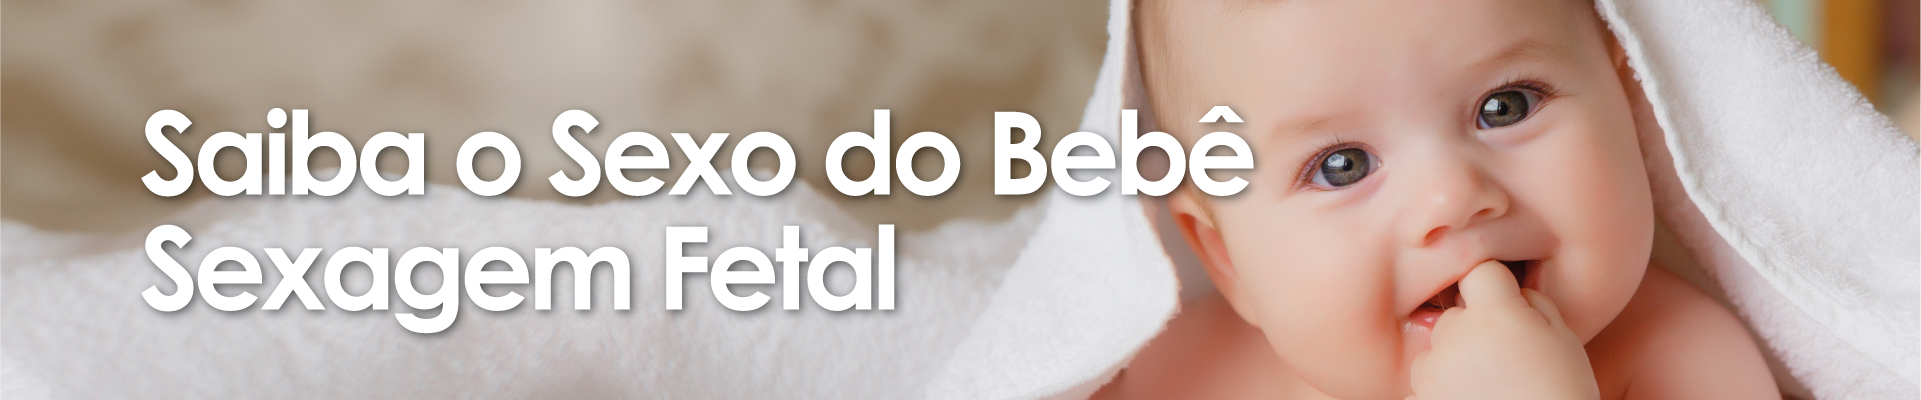 Sexagem Fetal - Descubra O Sexo Do Bebê - Bebê com toalha na cabeça